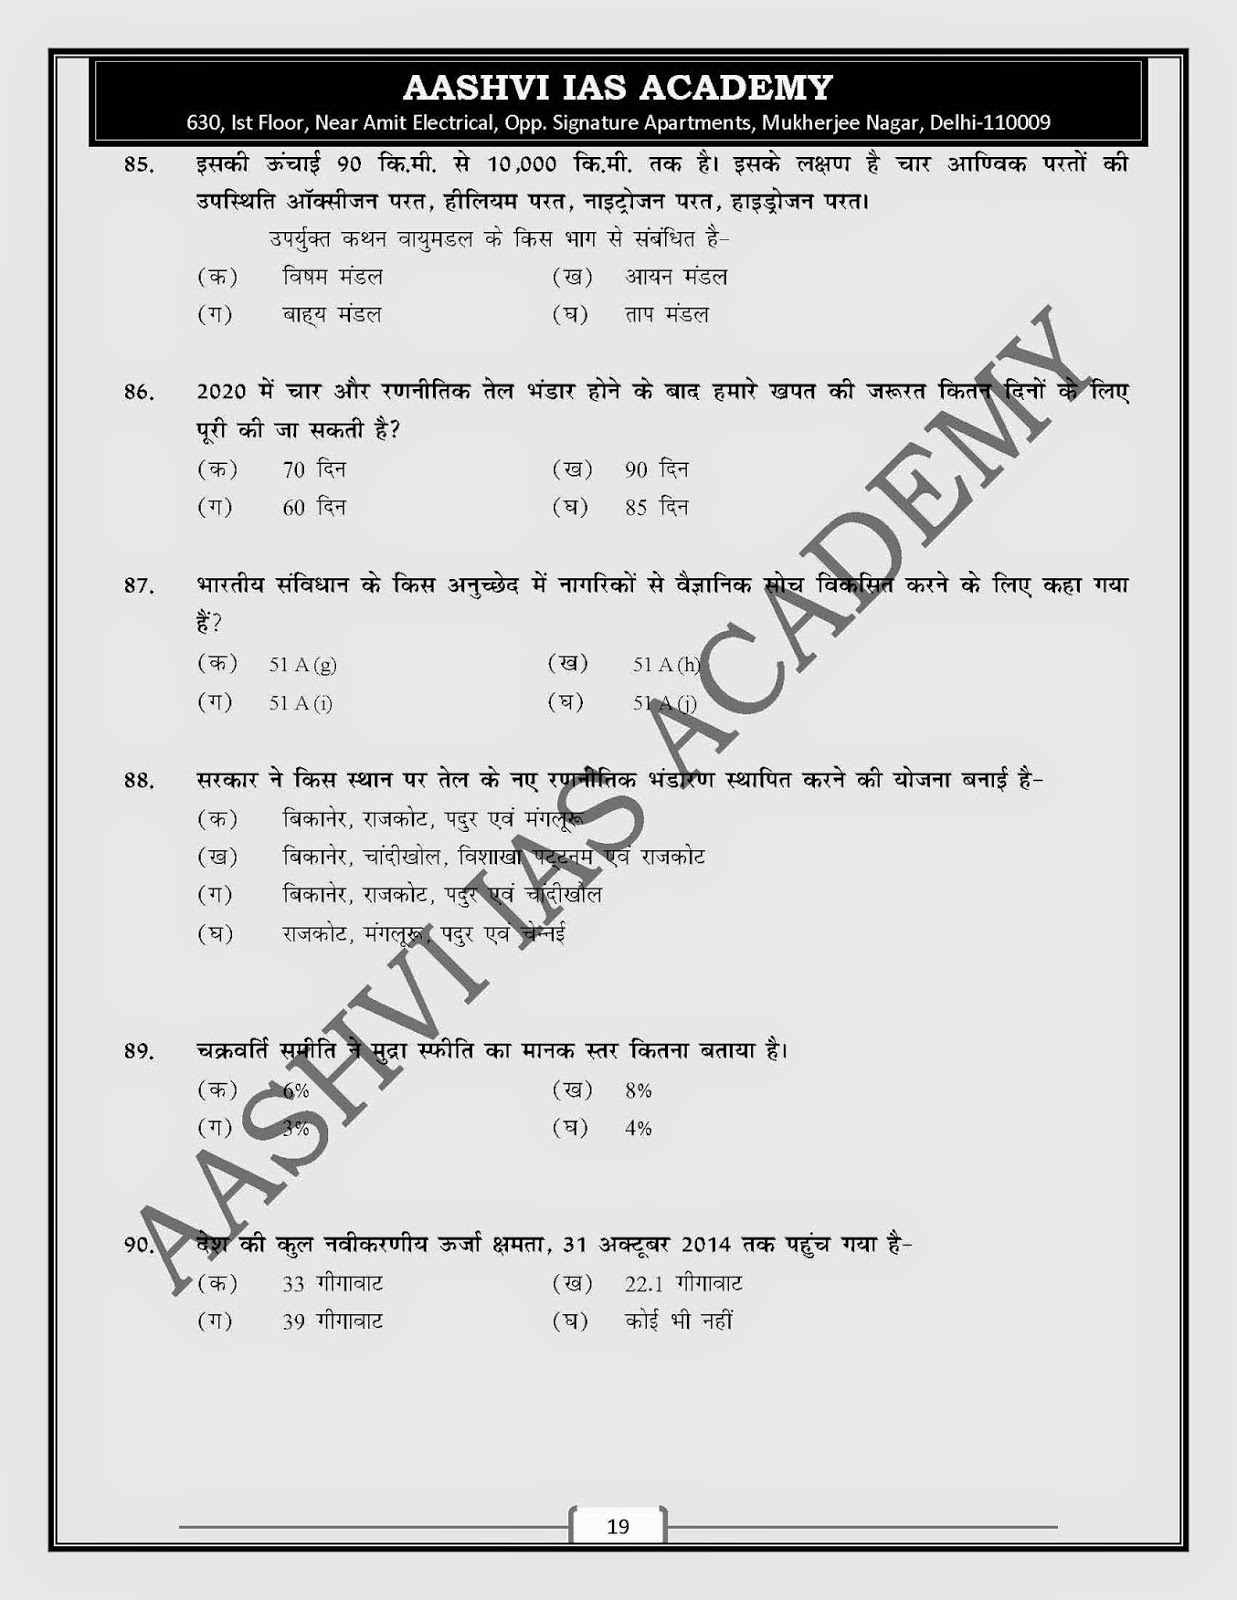 model answer civil services221 mains gs paper 21: AASHVI IAS